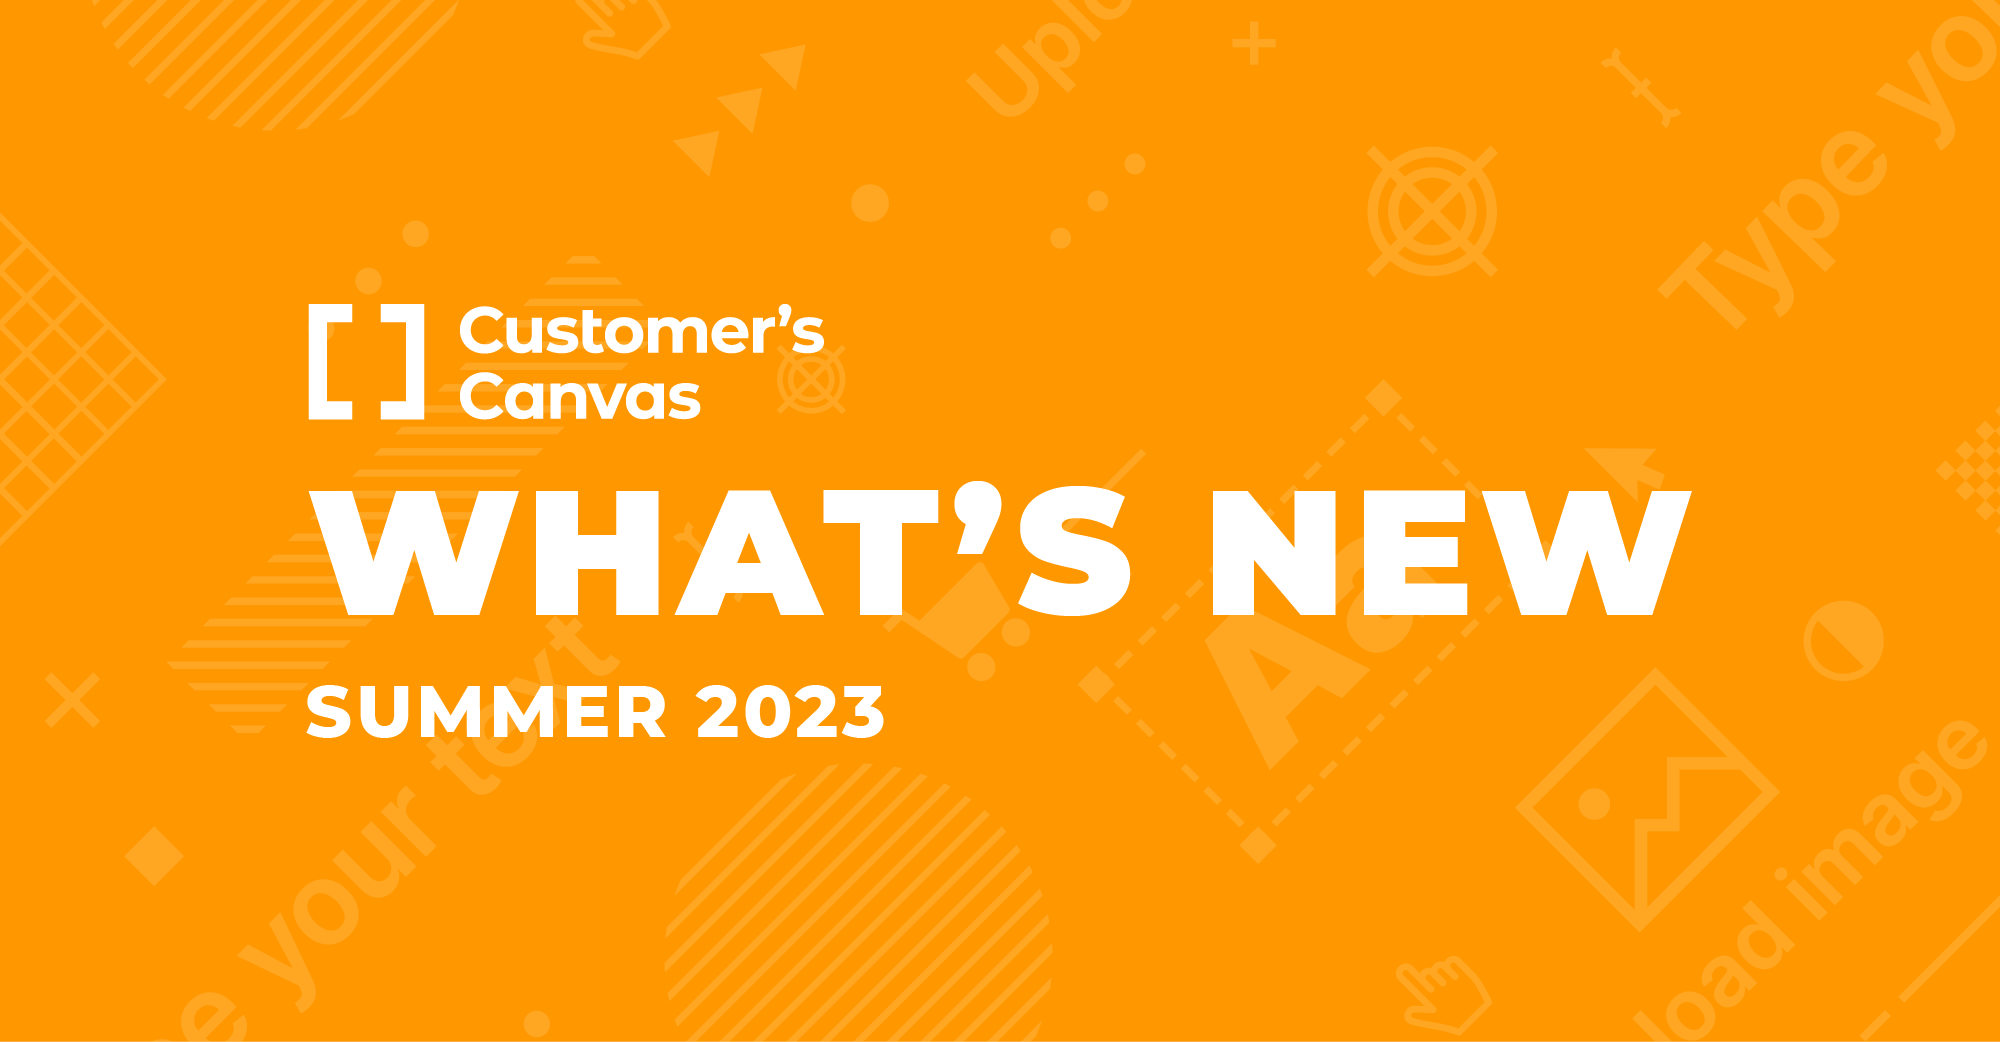 A better Customer’s Canvas: Summer 2023